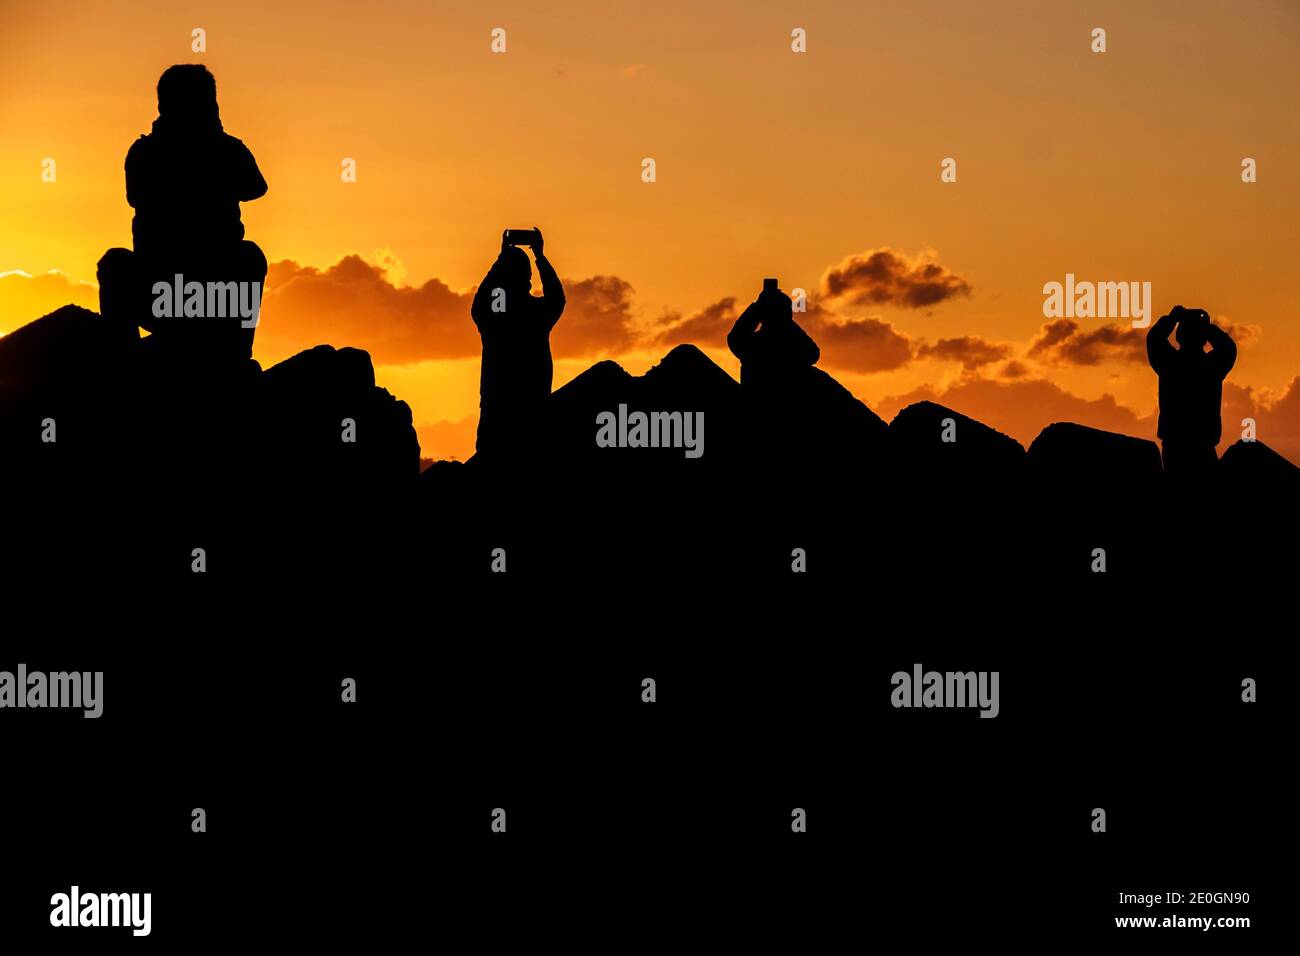 1ER JANVIER 2021 - les gens prennent des photos et regardent le premier lever de soleil de la nouvelle année, connu sous le nom de hatsuhinode, sur une plage à Fujisawa, au Japon. Crédit : Ben Weller/AFLO/Alay Live News Banque D'Images